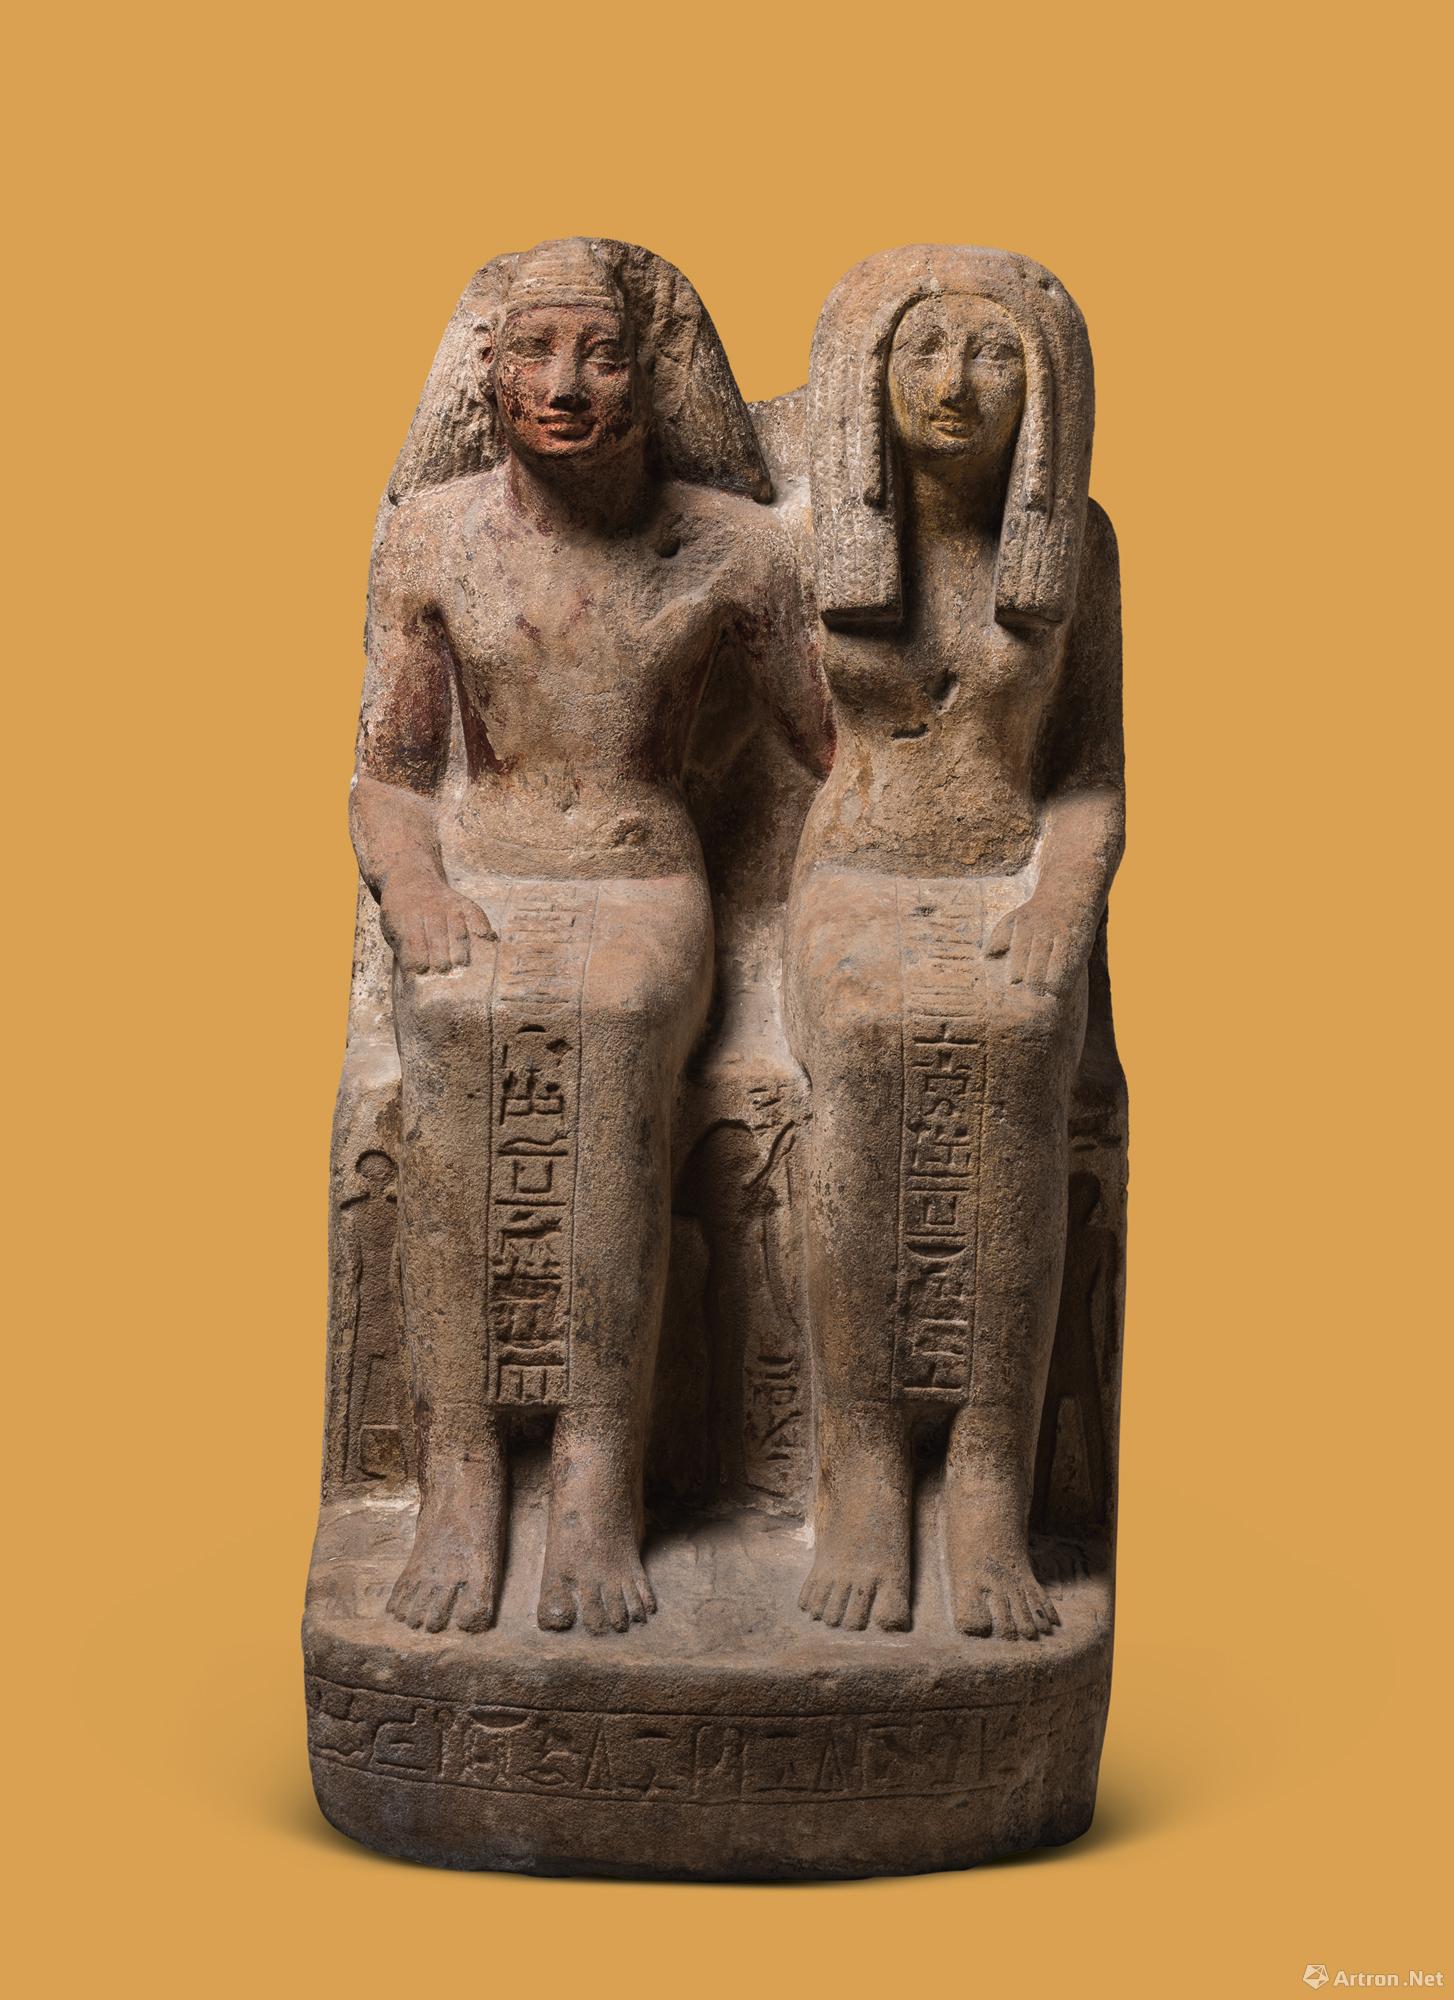 nebnetjeru(古埃及大祭司)雕像 高67厘米 第十八王朝中期(前1550